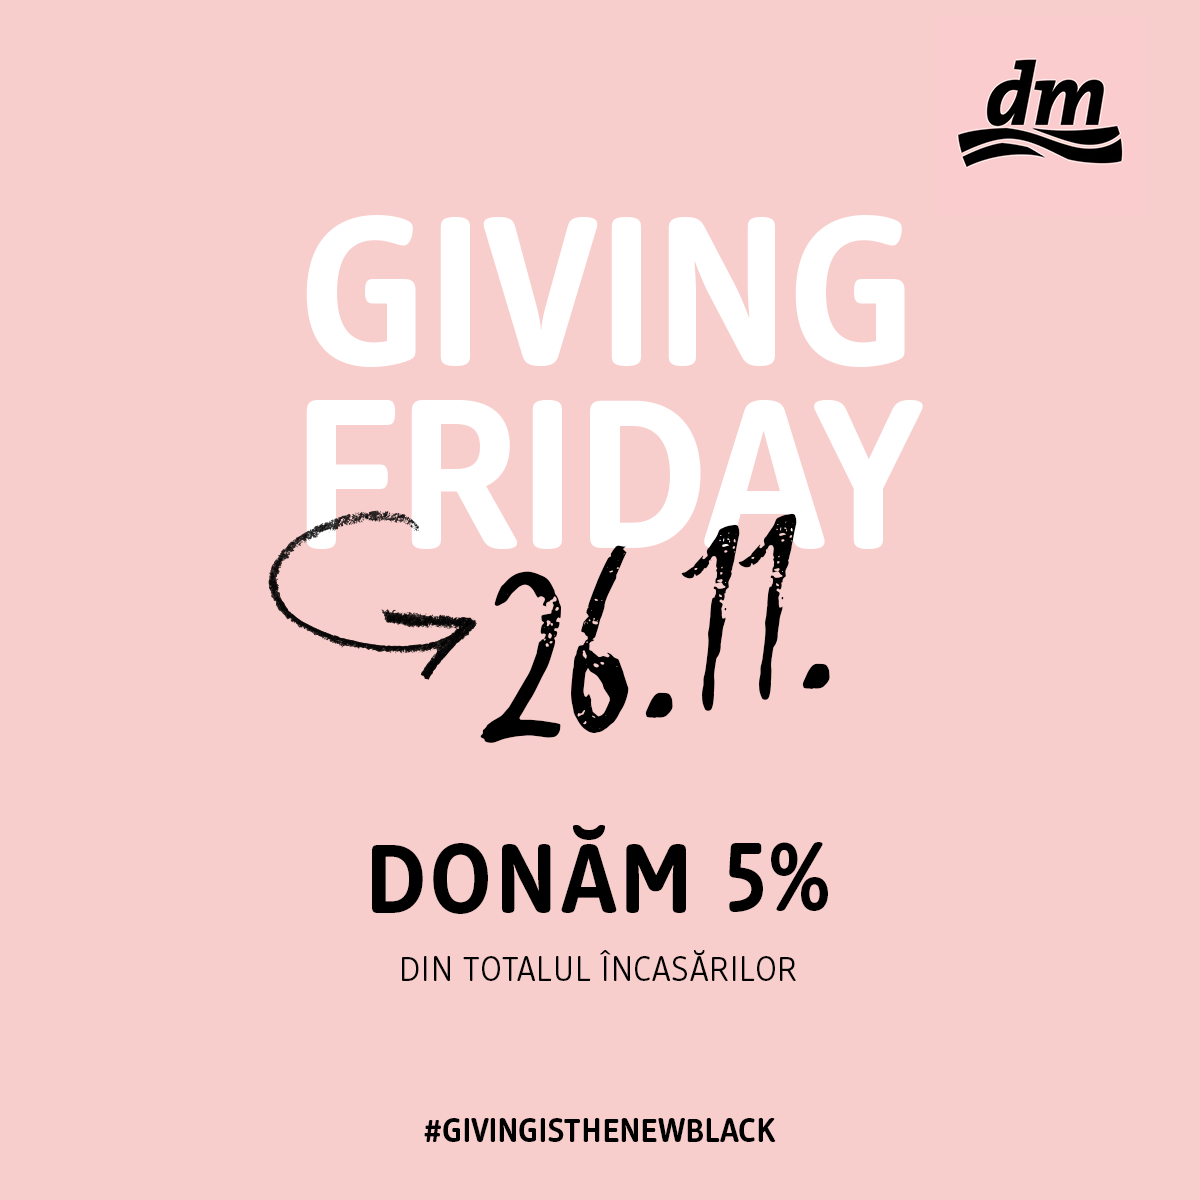 (P) Giving Friday - în loc de Black Friday, dm donează 5% din încasări pentru copiii în nevoie